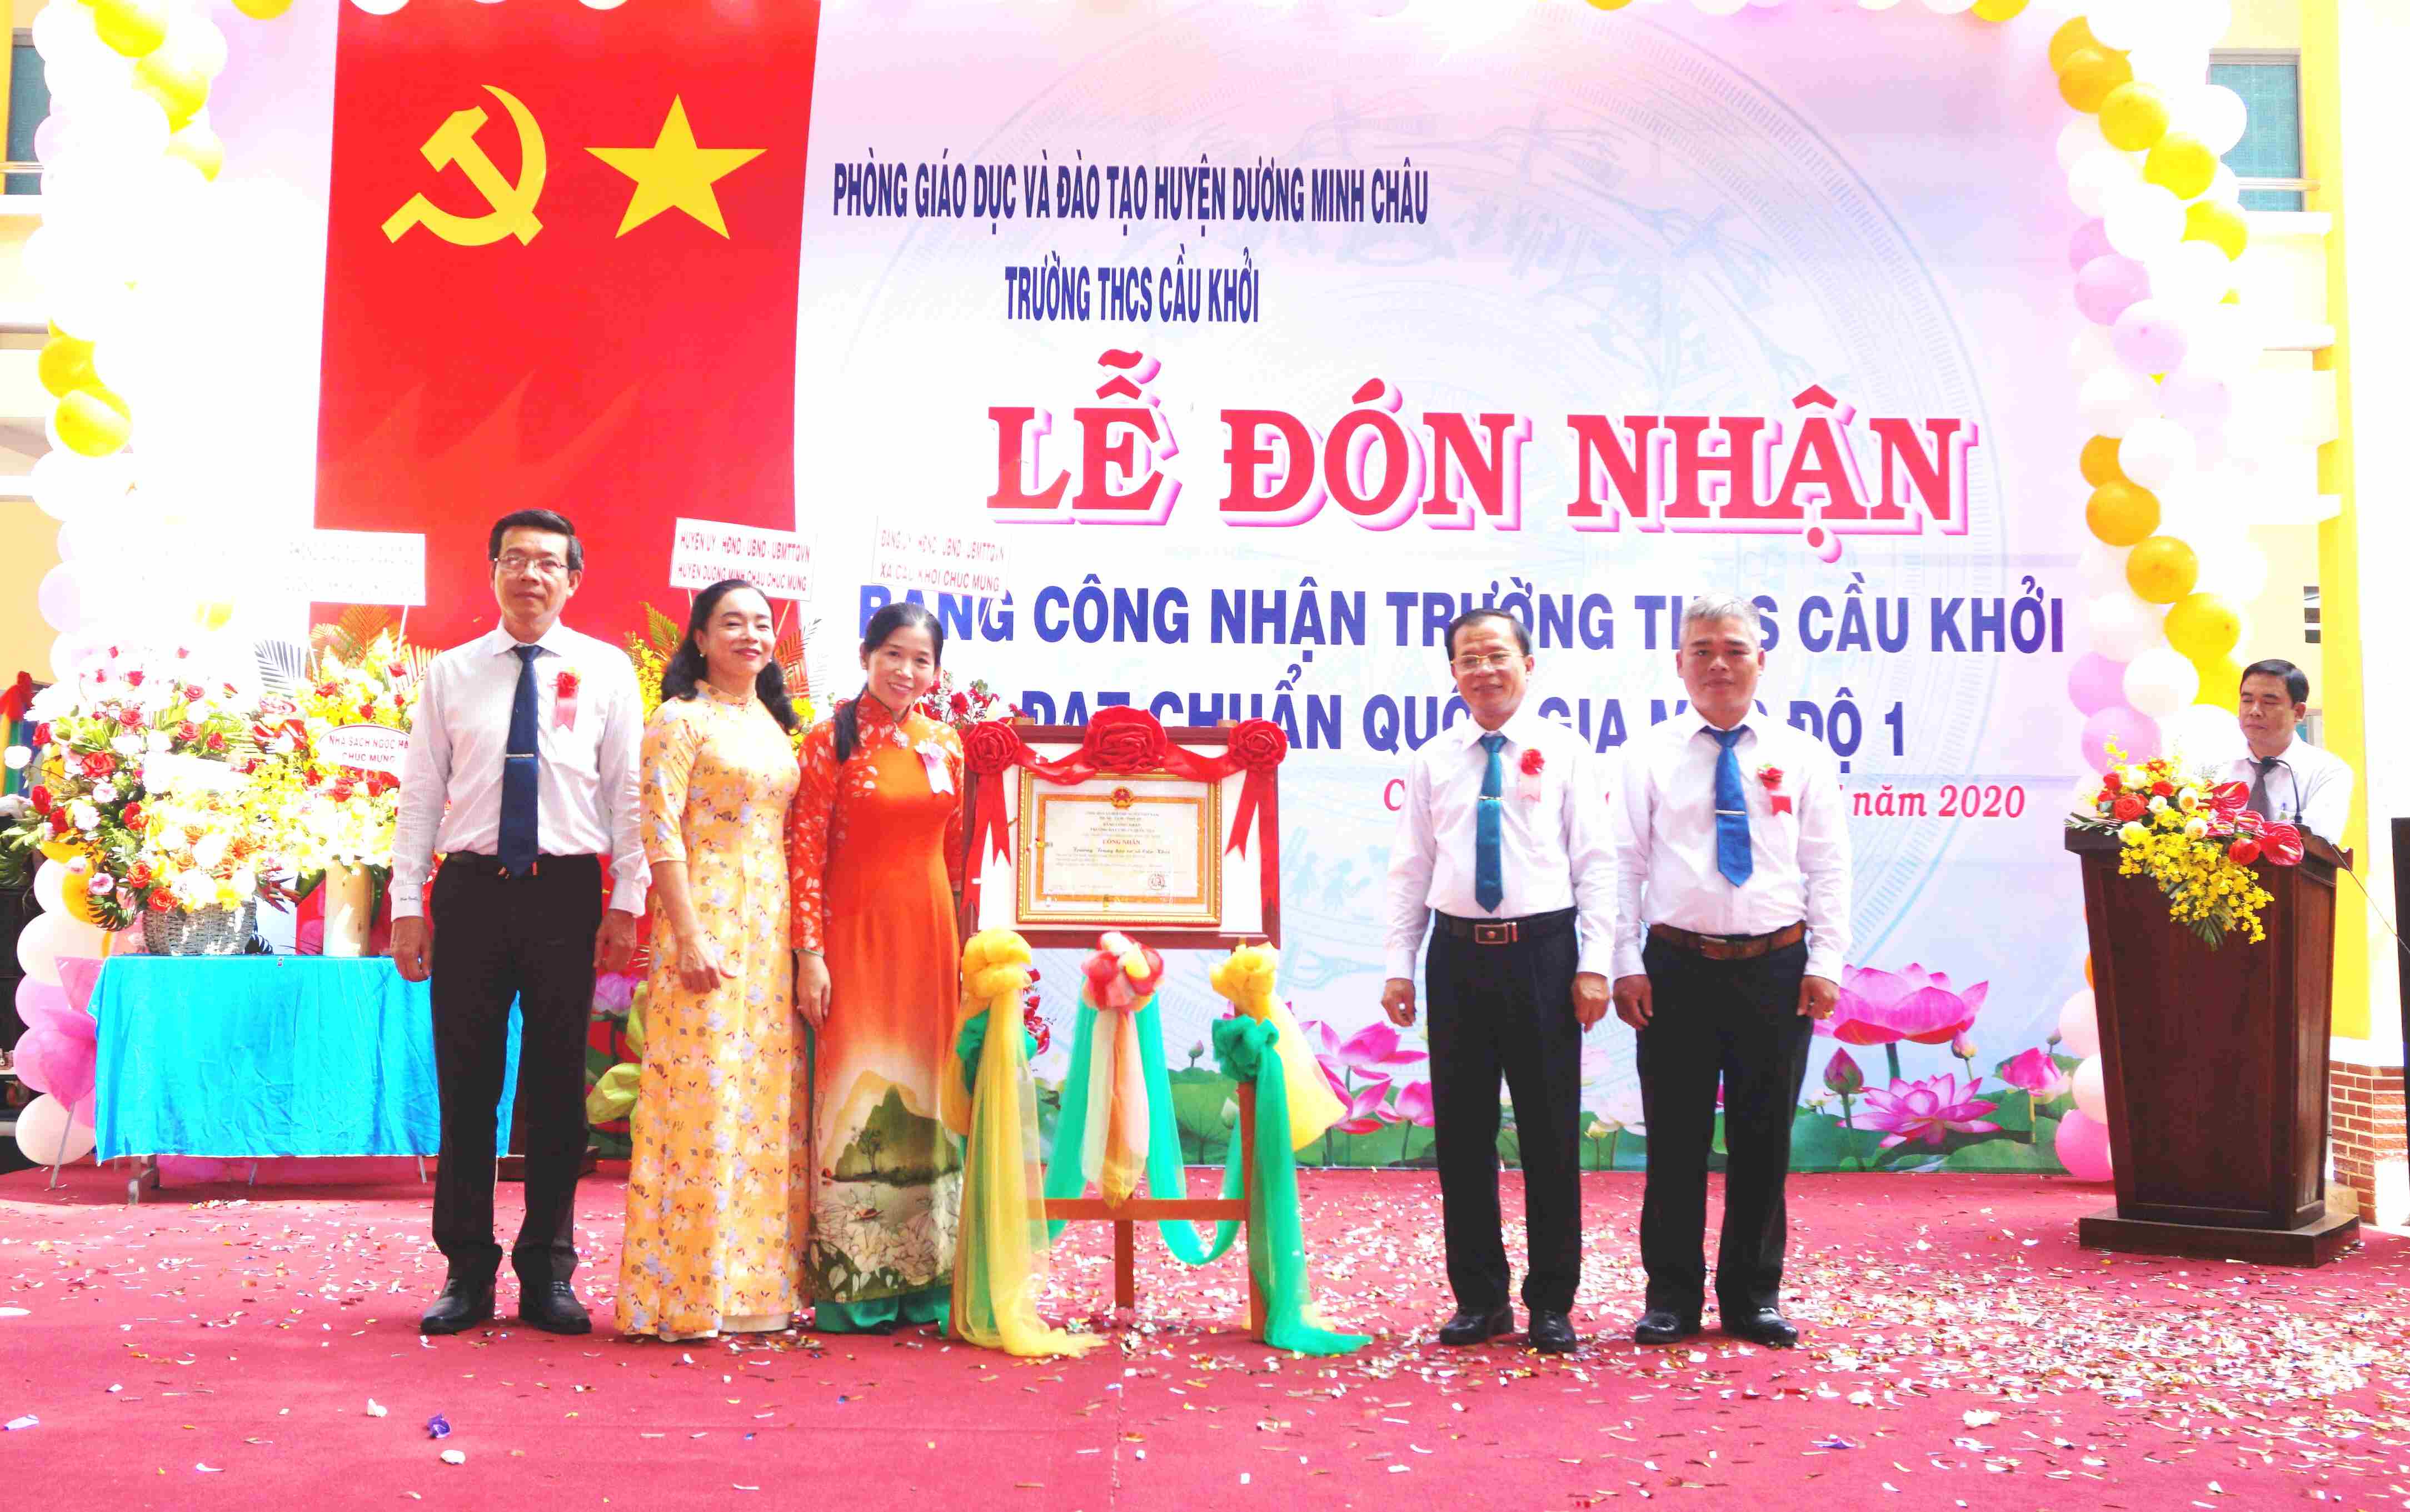 Huyện Dương Minh Châu: Tổ chức Lễ đón bằng công nhận trường THCS Cầu Khởi đạt chuẩn quốc gia mức độ I